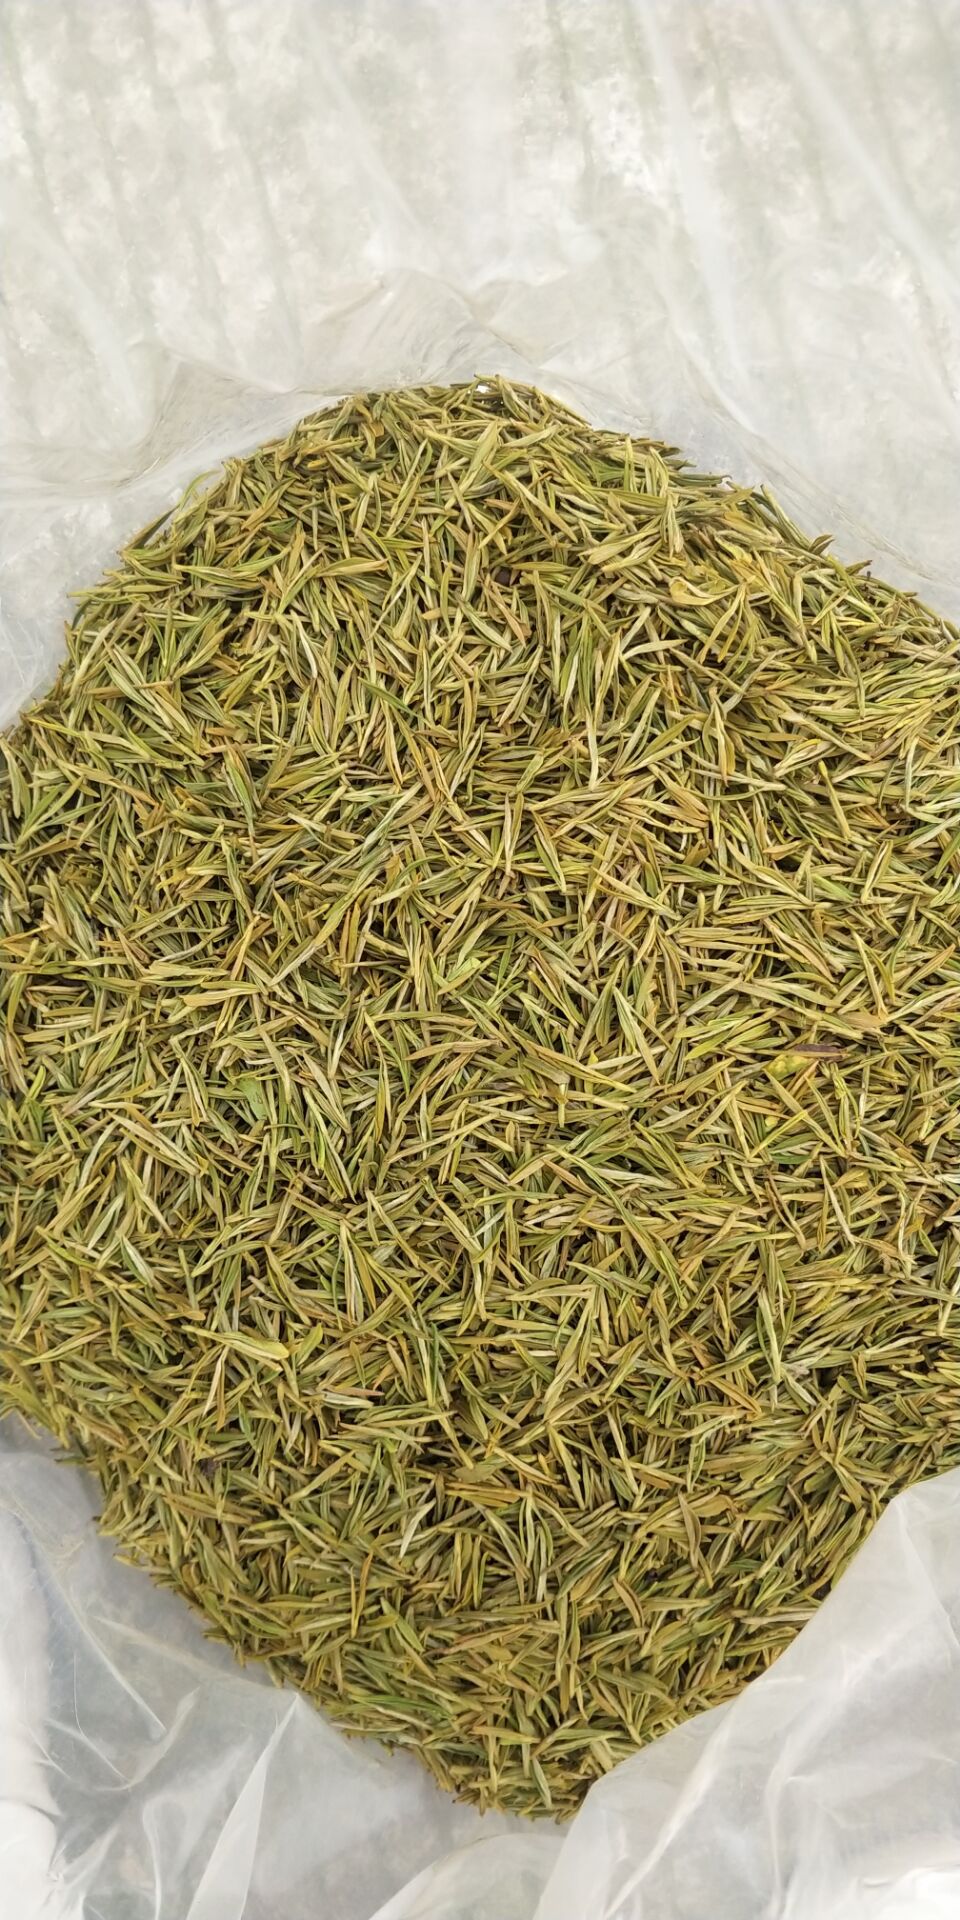 [黄金茶批发]黄金茶 精品黄金叶最后几斤价格960元/斤